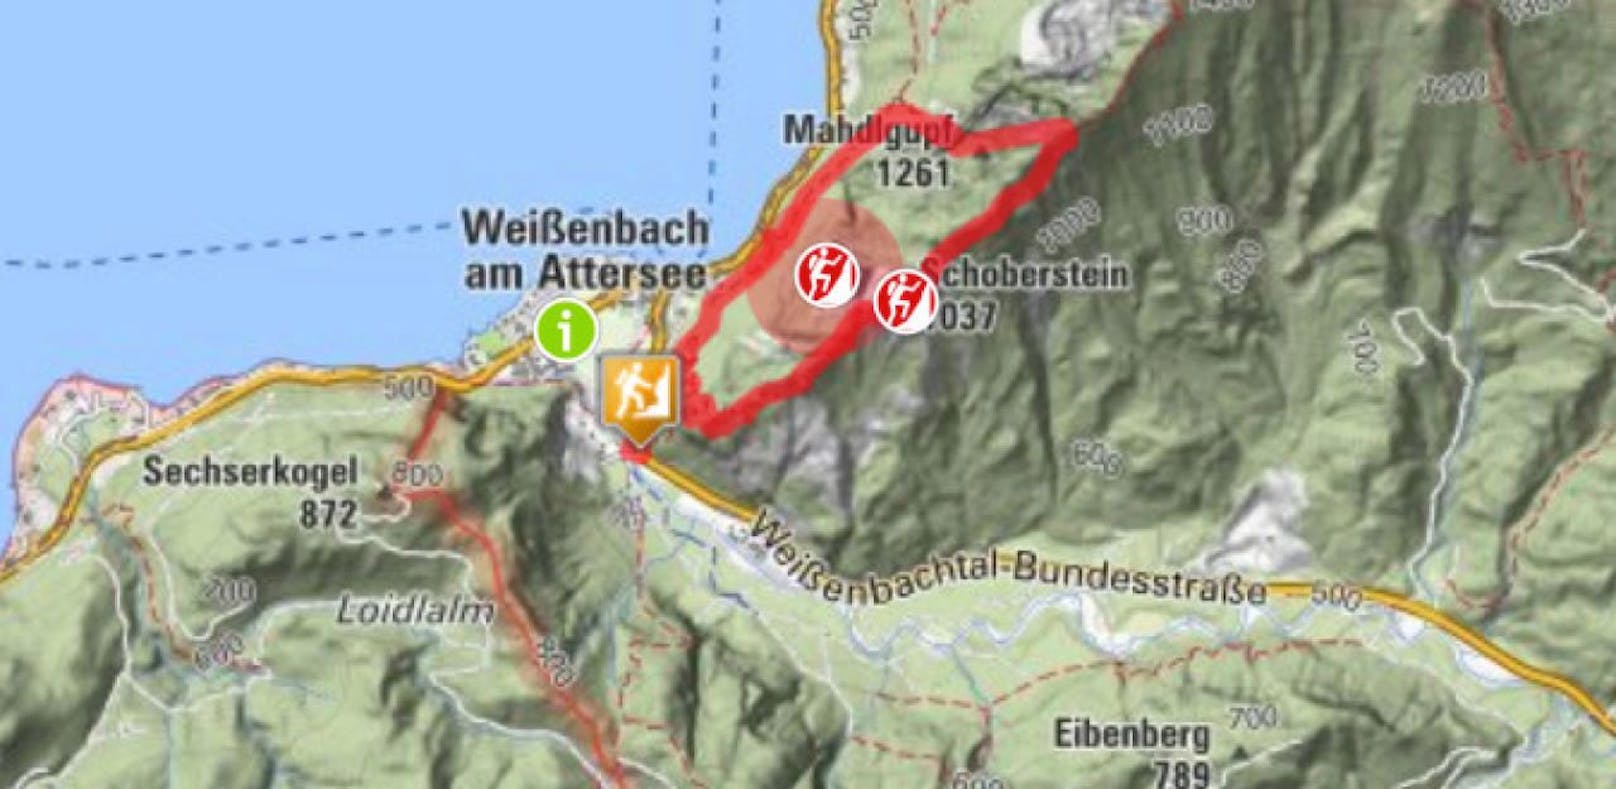 Das Trio war Donnerstag von Steinbach am Attersee zum Gipfel des Mahdlgupfs aufgebrochen. 